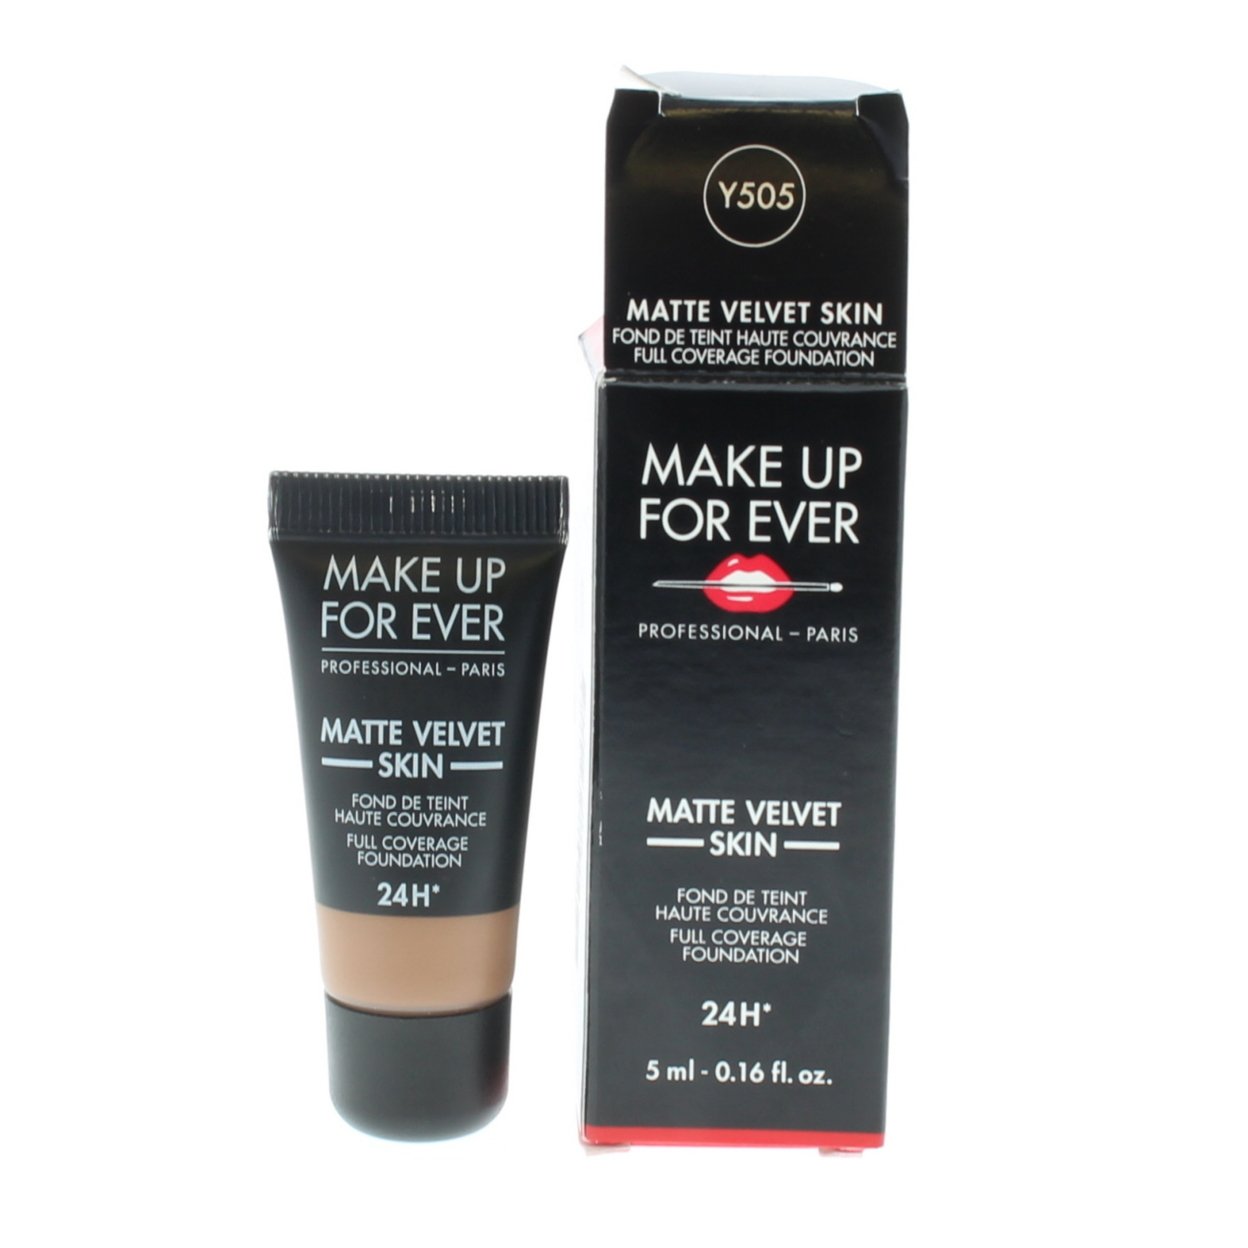 Make Up For Ever Matte Velvet Skin Full Coverage Foundation 5ml/0.16oz Shade Y505